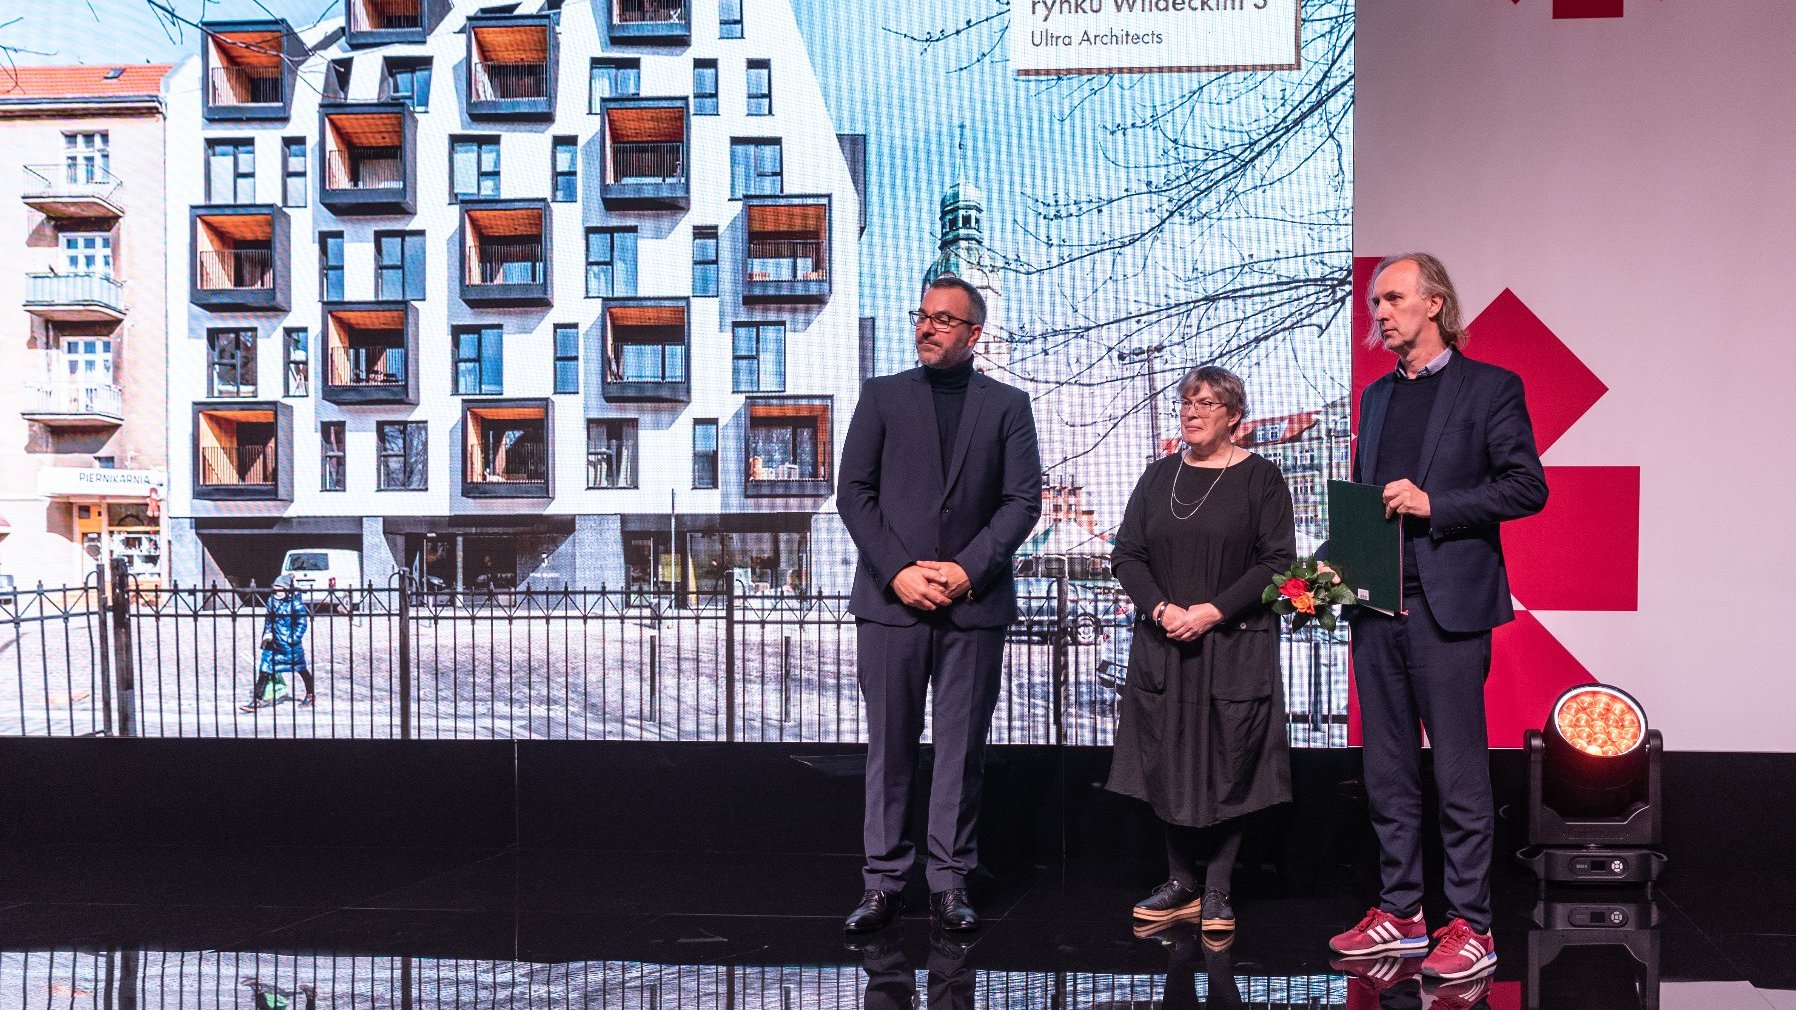 W tym roku jury przyznało także dwa wyróżnienia. Jedno z nich trafiło do Marcina Kościucha i Tomasz Osięgłowskiego z zespołem z pracowni Ultra Architects za projekt kamienicy przy rynku Wildeckim 3.